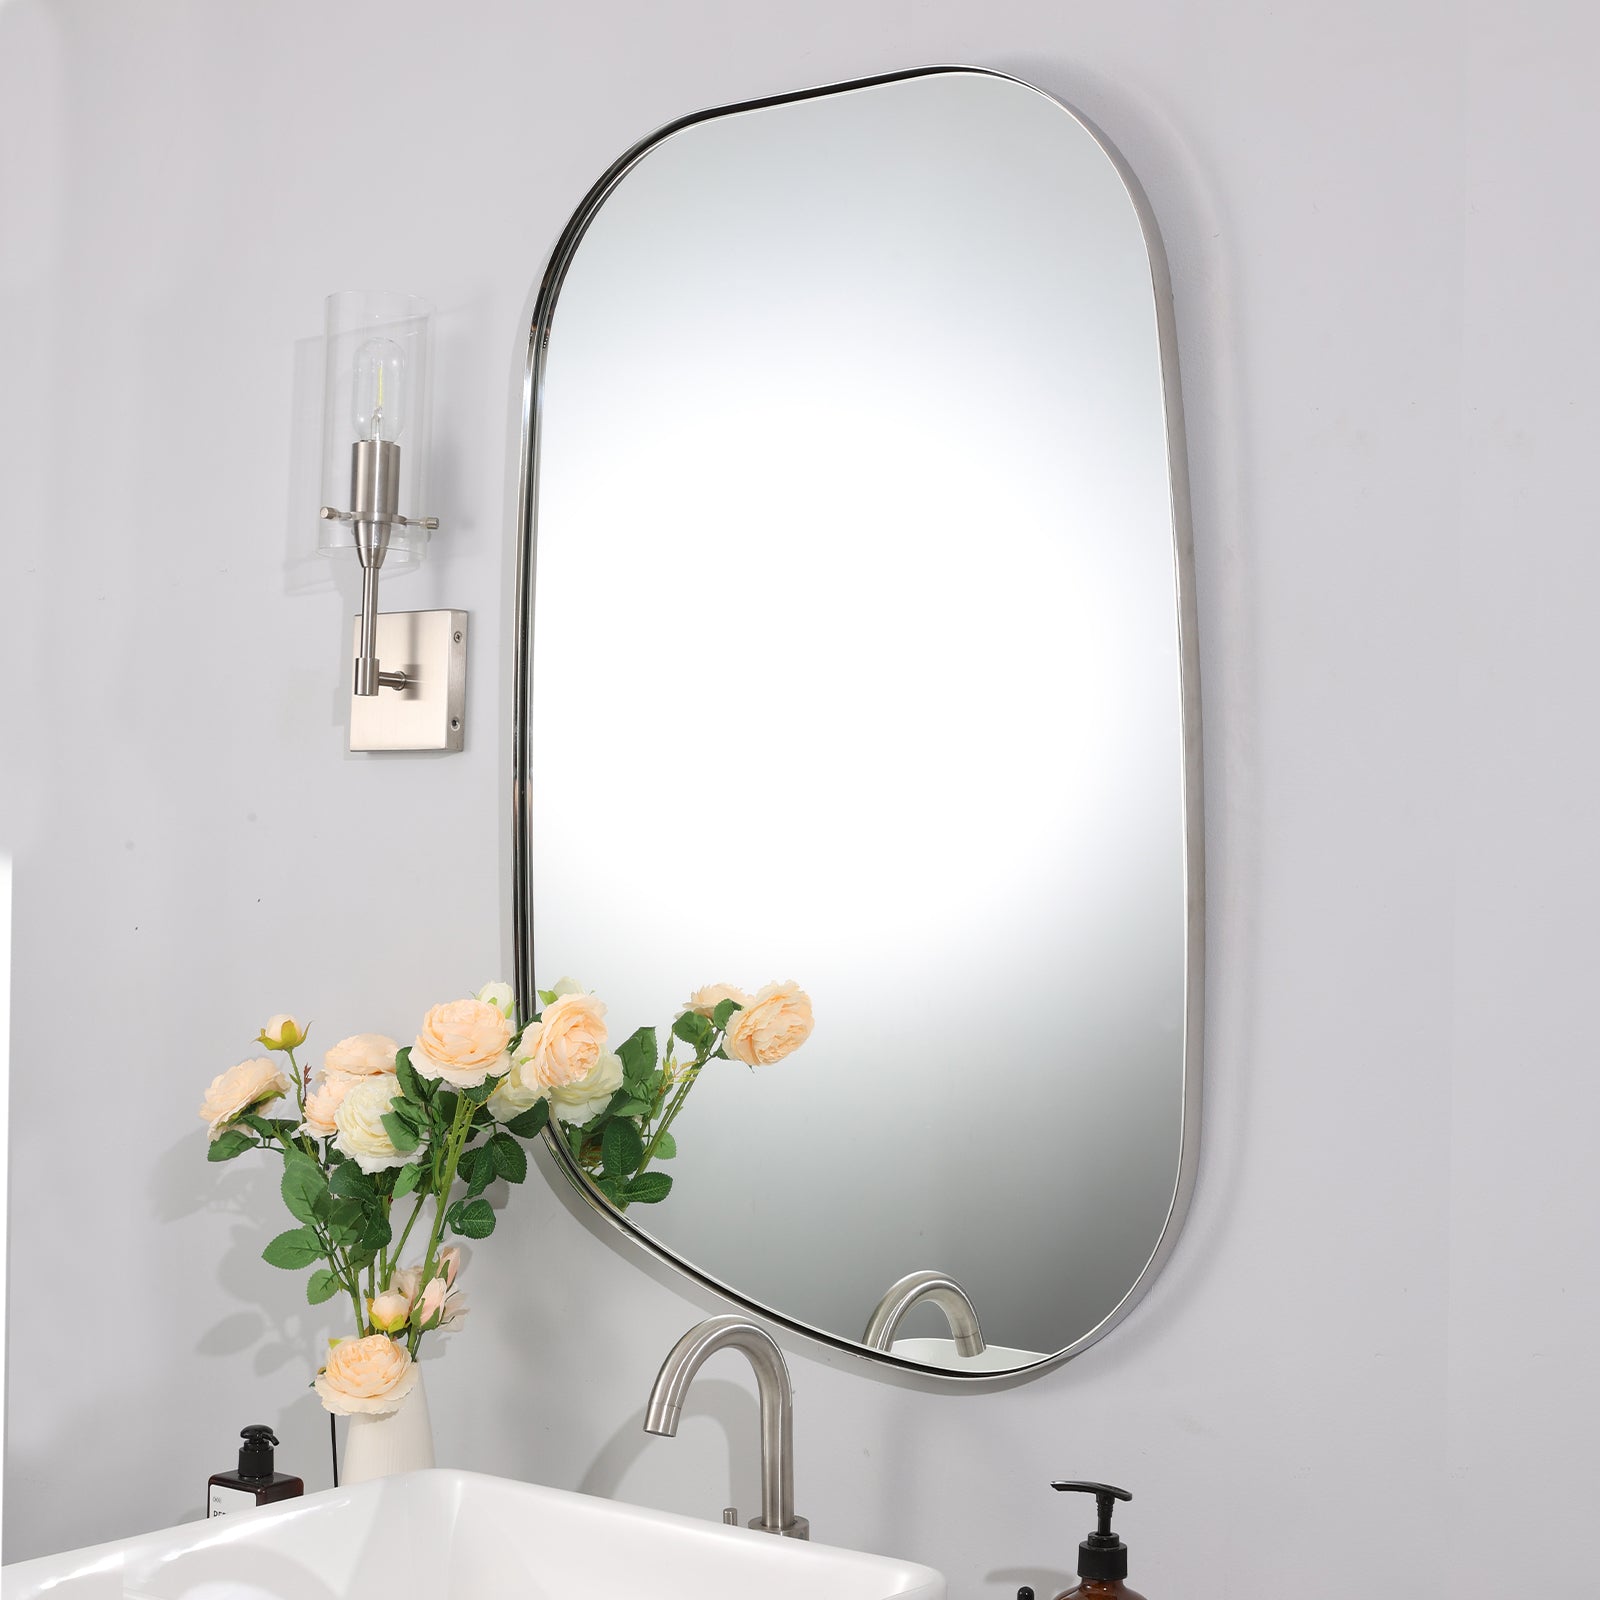 Irregular Bathroom Mirror Asymmetrical Irregular Wall MirrorIrregular Bathroom Mirror Asymmetrical Irregular Wall Mirror#color_brushed nickel